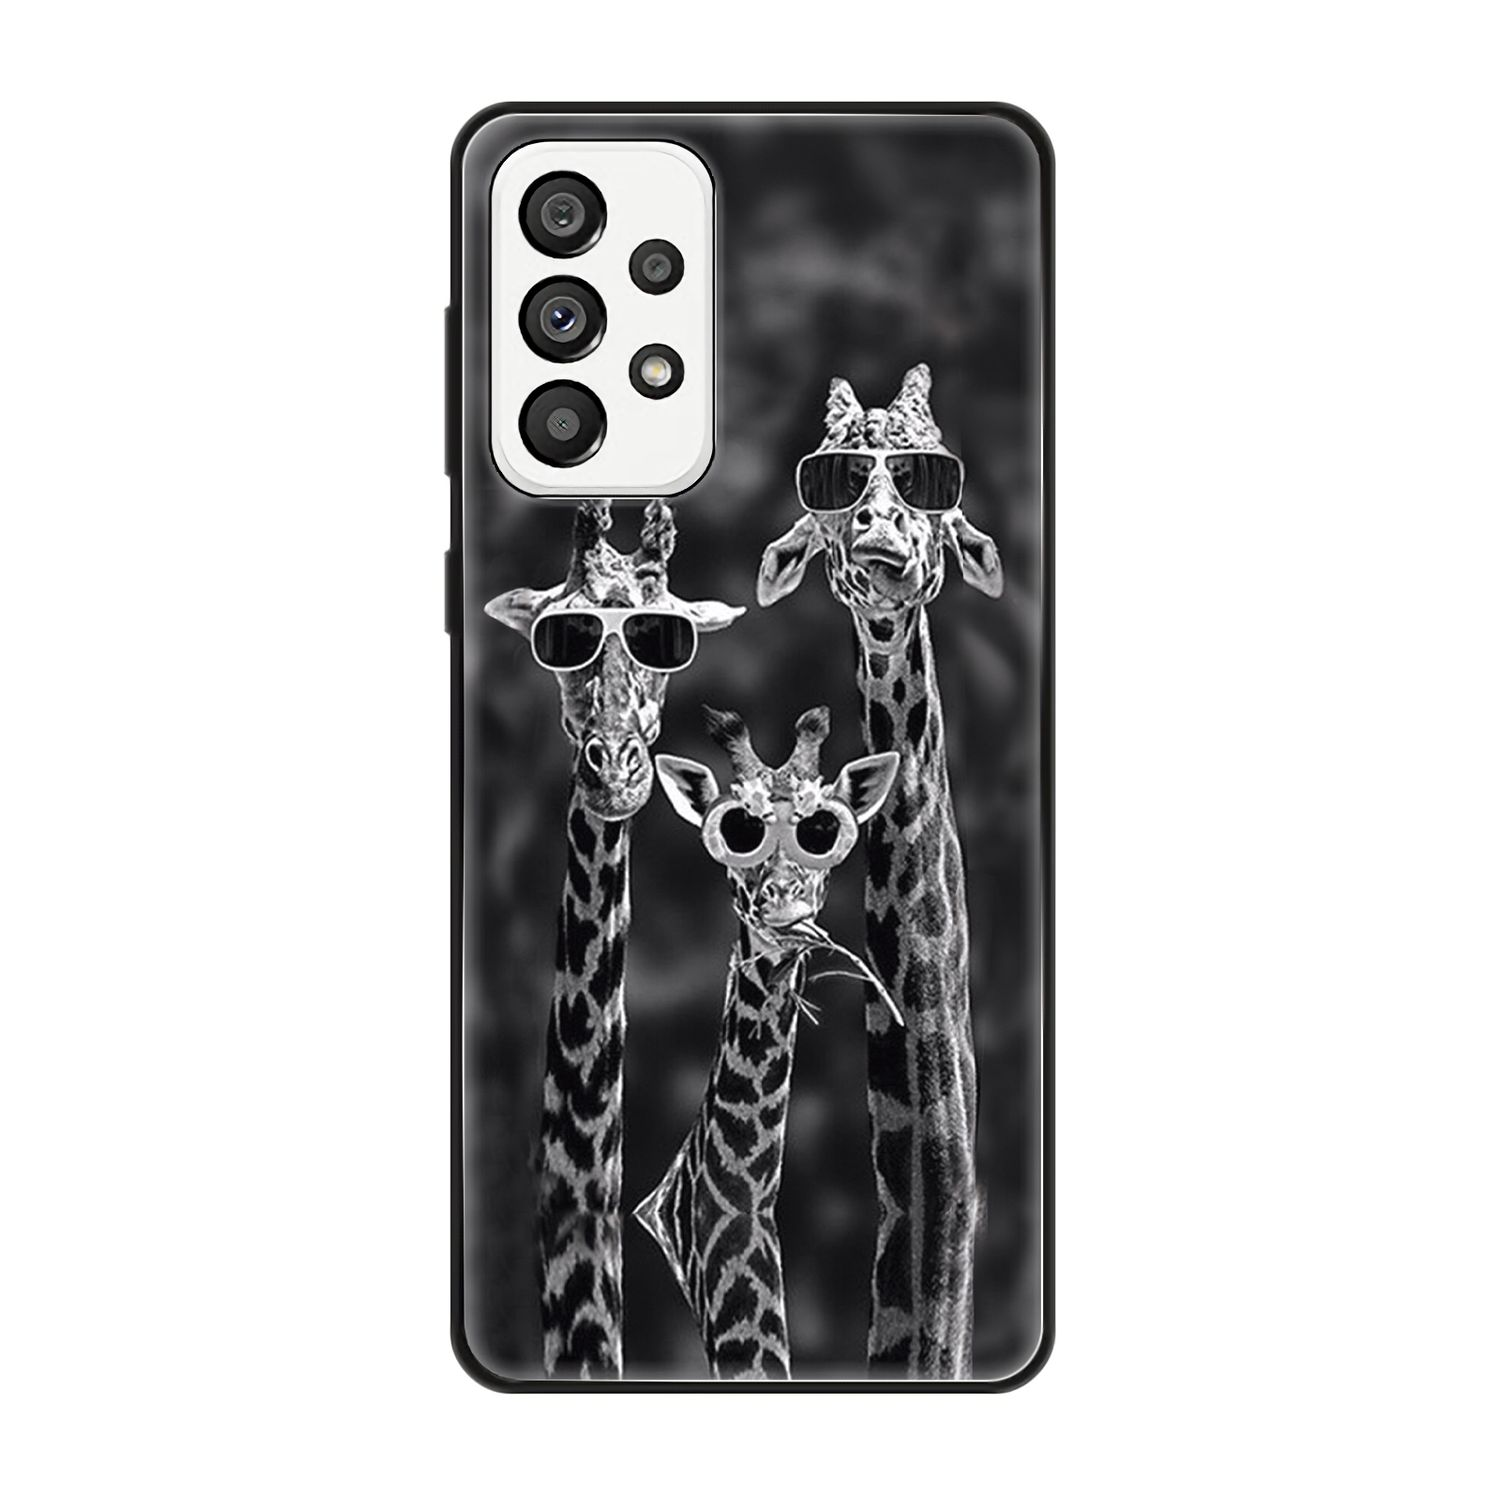 Case, KÖNIG Galaxy 5G, 3 DESIGN Samsung, Giraffen A73 Backcover,